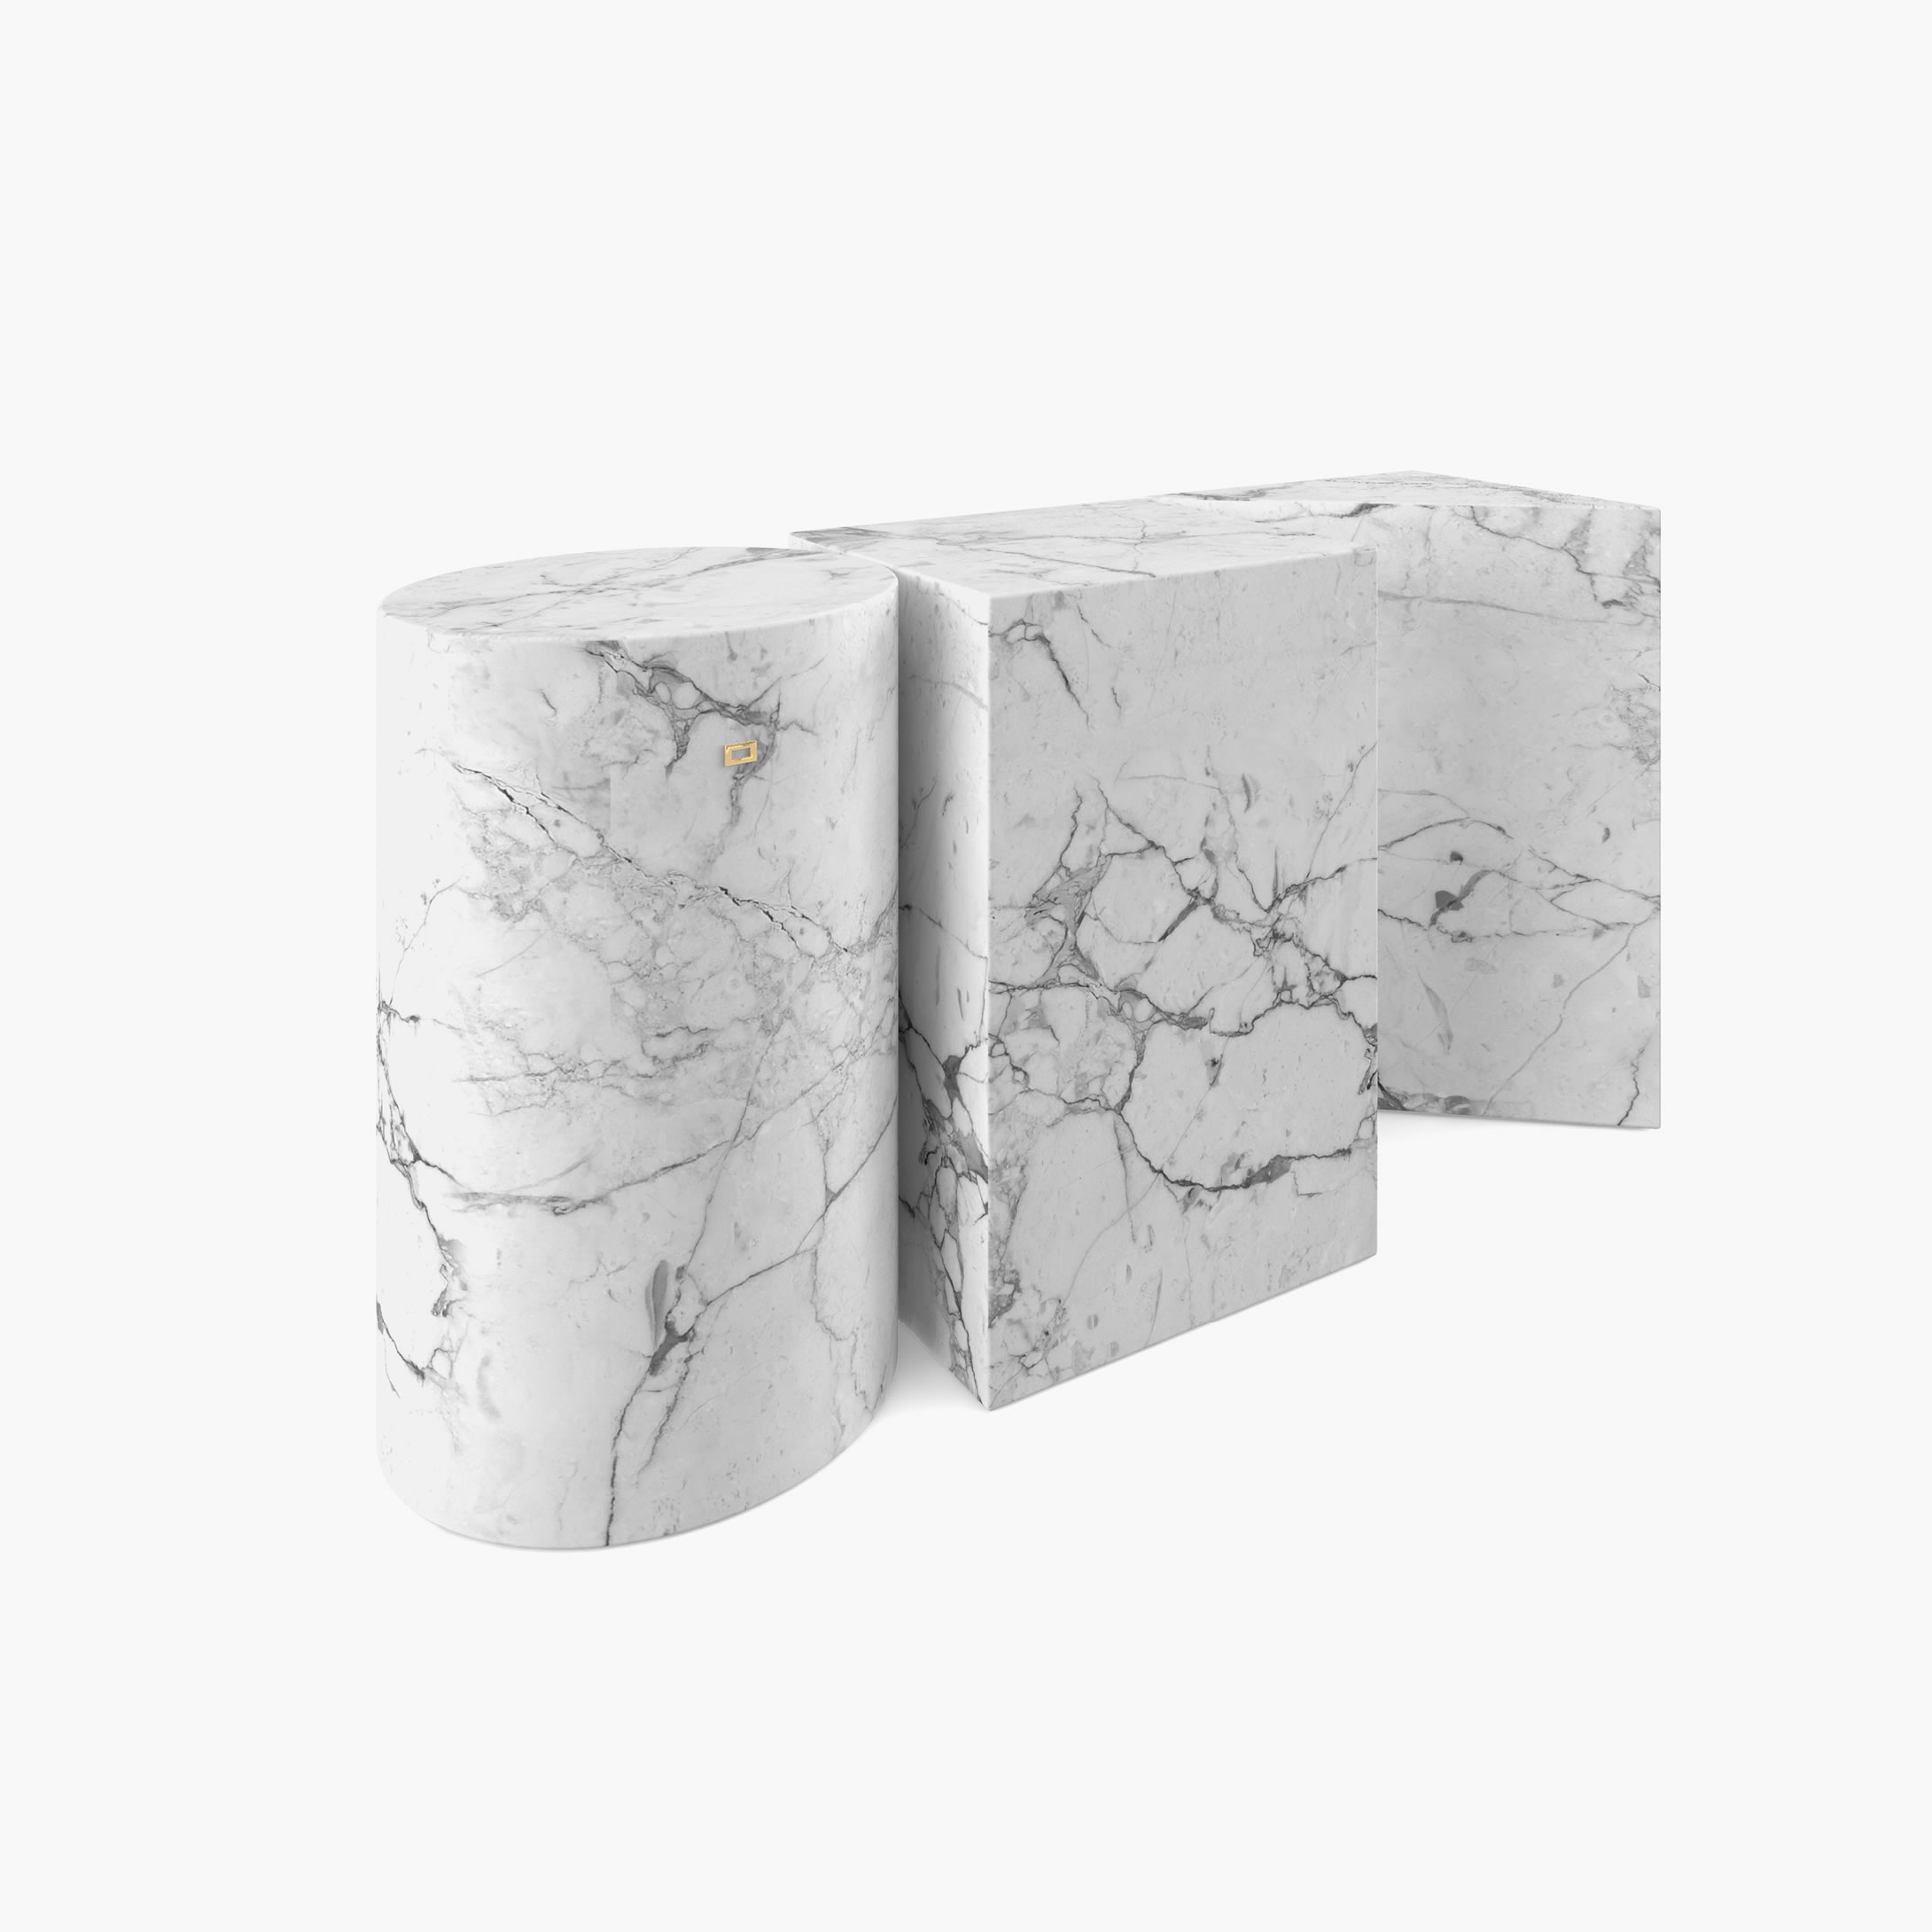 Beistelltisch Zylinder Quader Prisma Weiss Arabescato Marmor ikonisch Wohnzimmer moderne Kunst Beistelltische FS 1 FELIX SCHWAKE